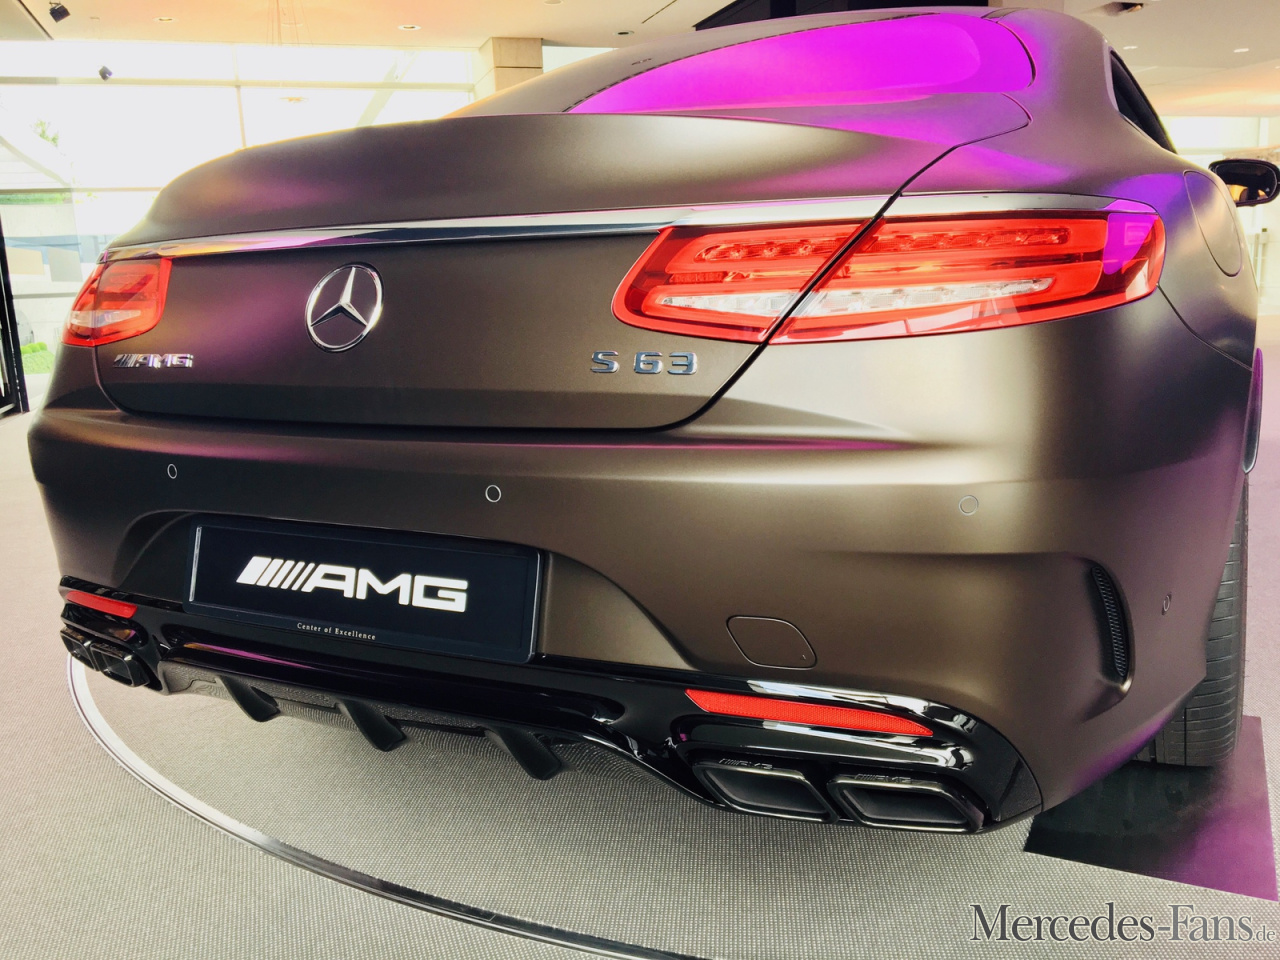 Wir stellen vor: CarSign Nummernschildhalter für alle Mercedes-Modelle:  Kennzeichenhalter für AMG-Modelle - News - Mercedes-Fans - Das Magazin für  Mercedes-Benz-Enthusiasten